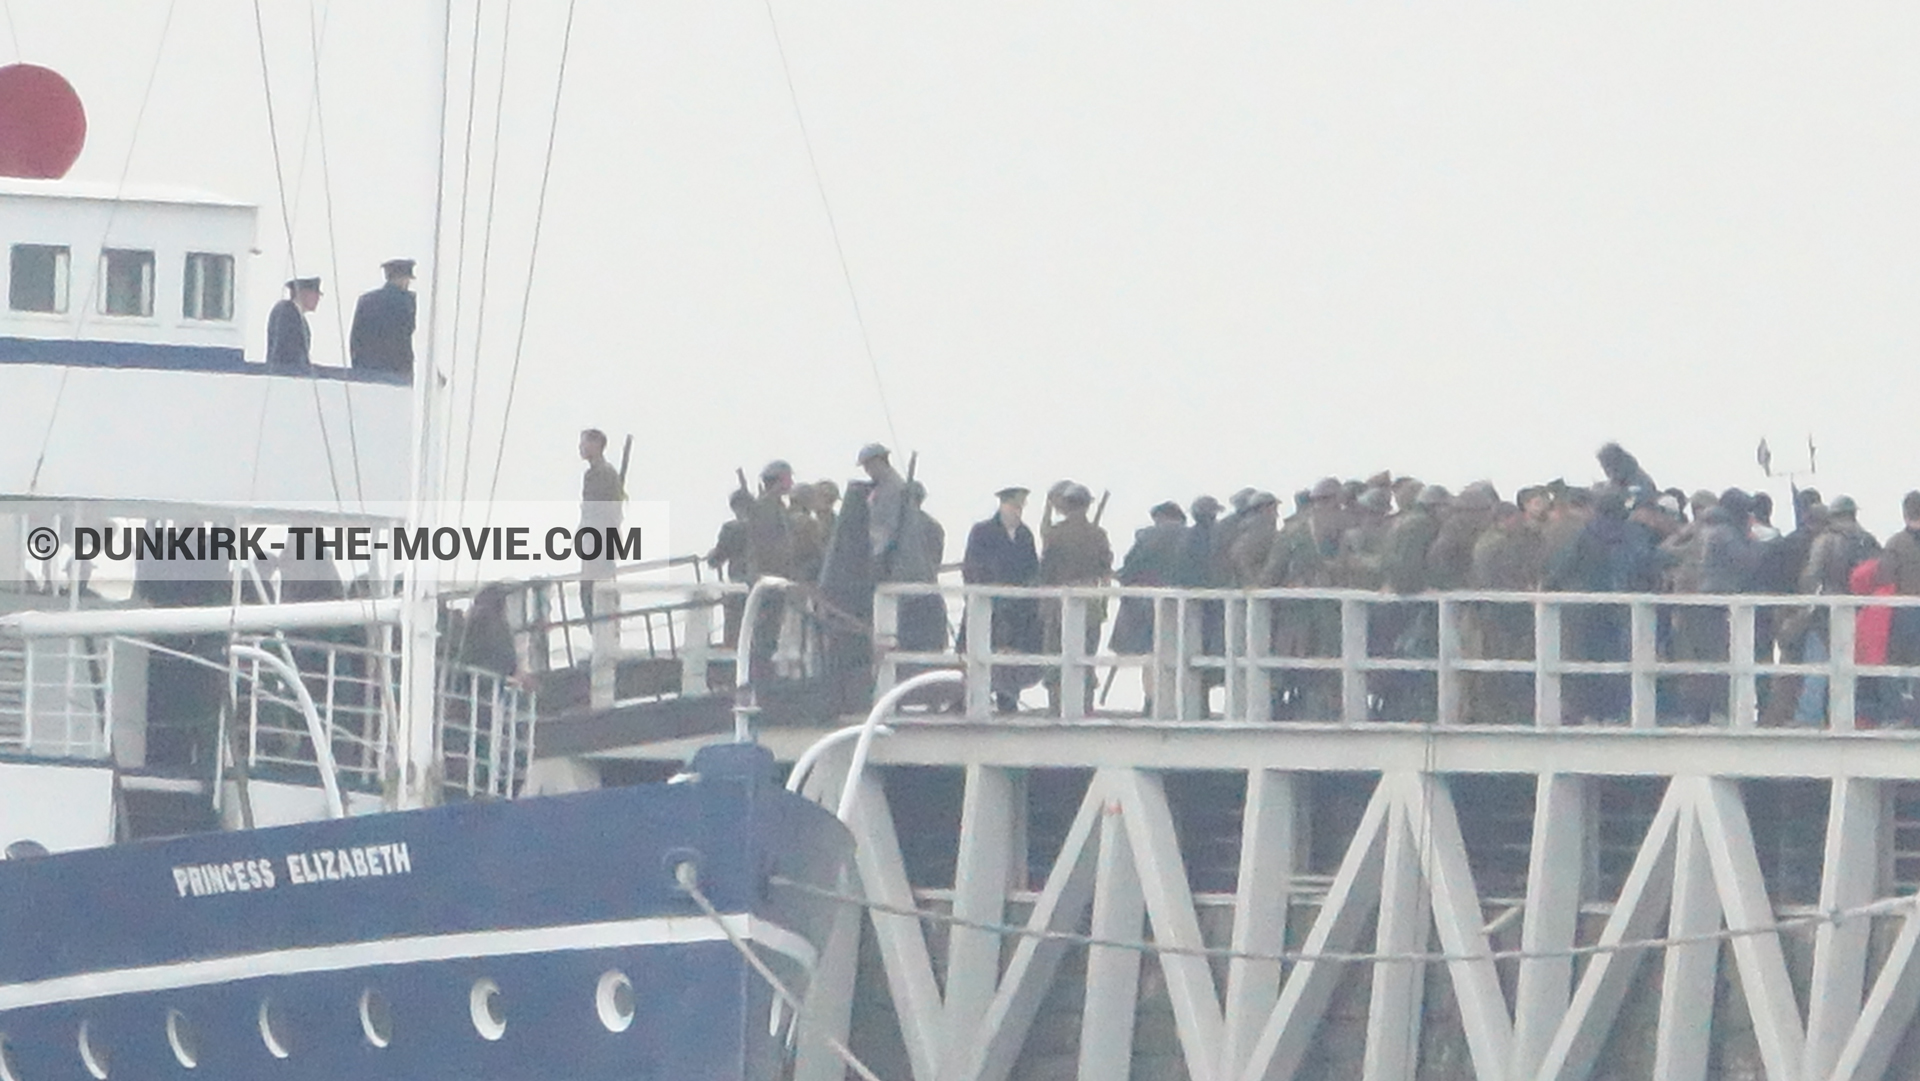 Photo avec ciel gris, figurants, jetée EST, Kenneth Branagh, Princess Elizabeth,  des dessous du Film Dunkerque de Nolan